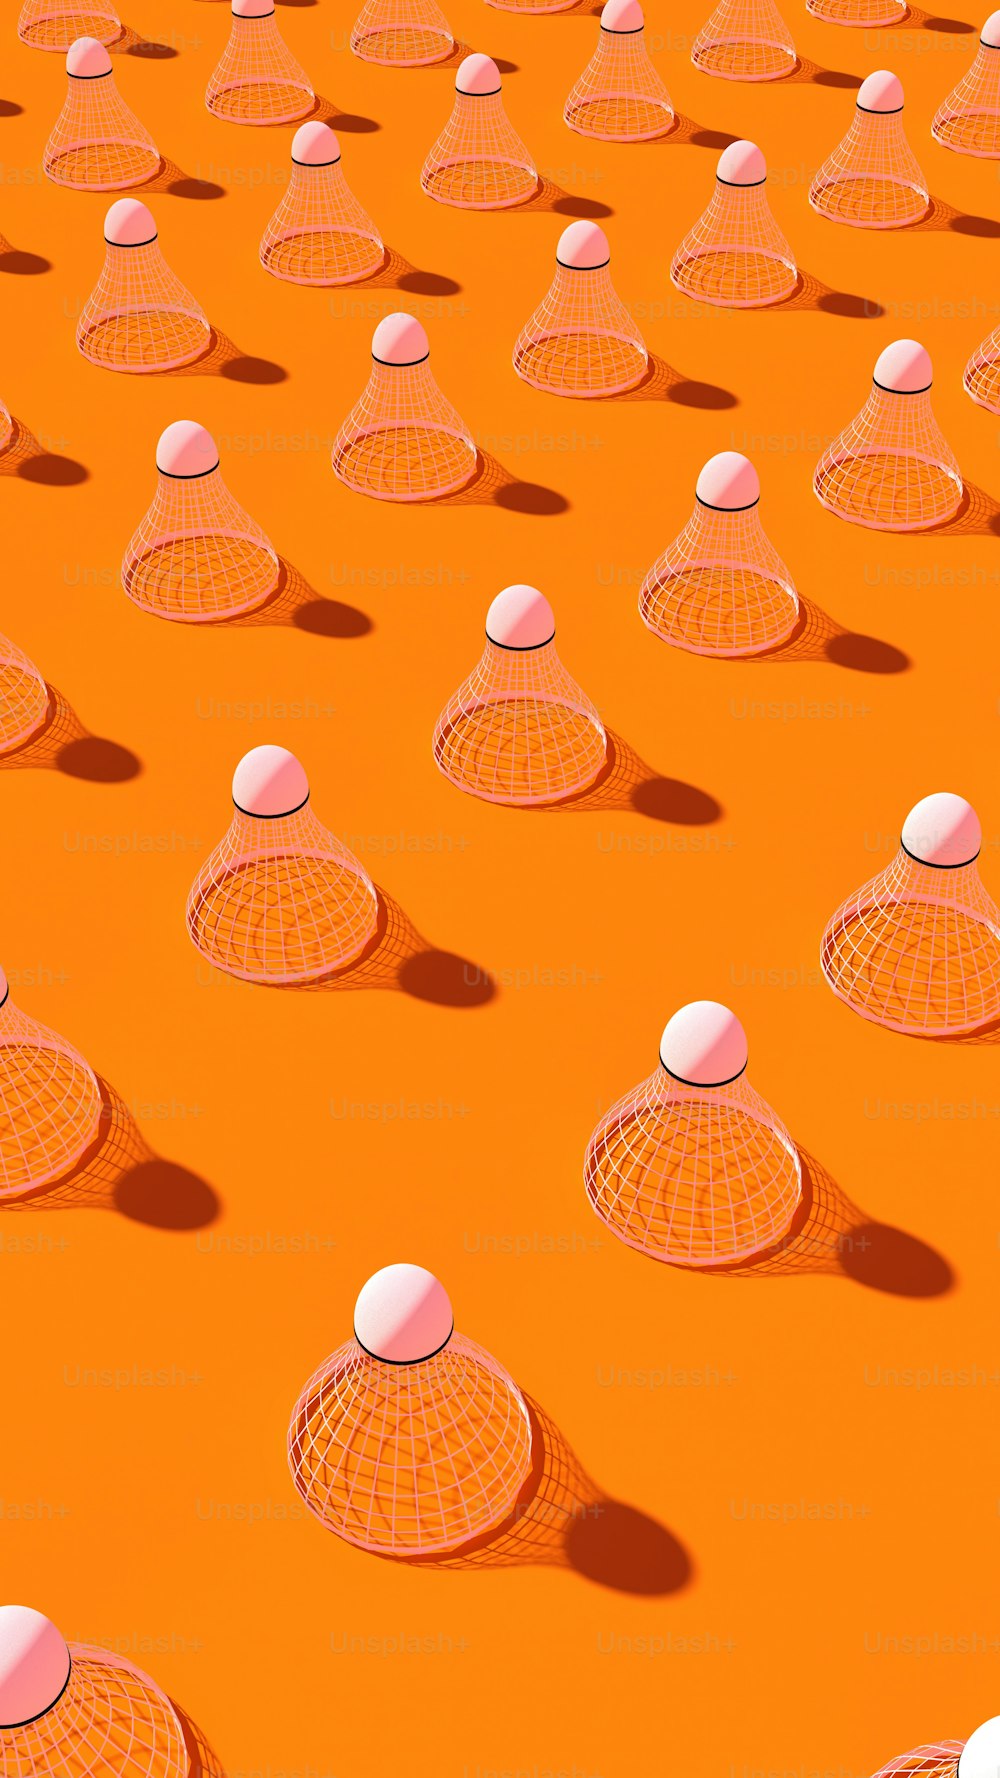 un groupe de boules blanches assises sur une surface orange